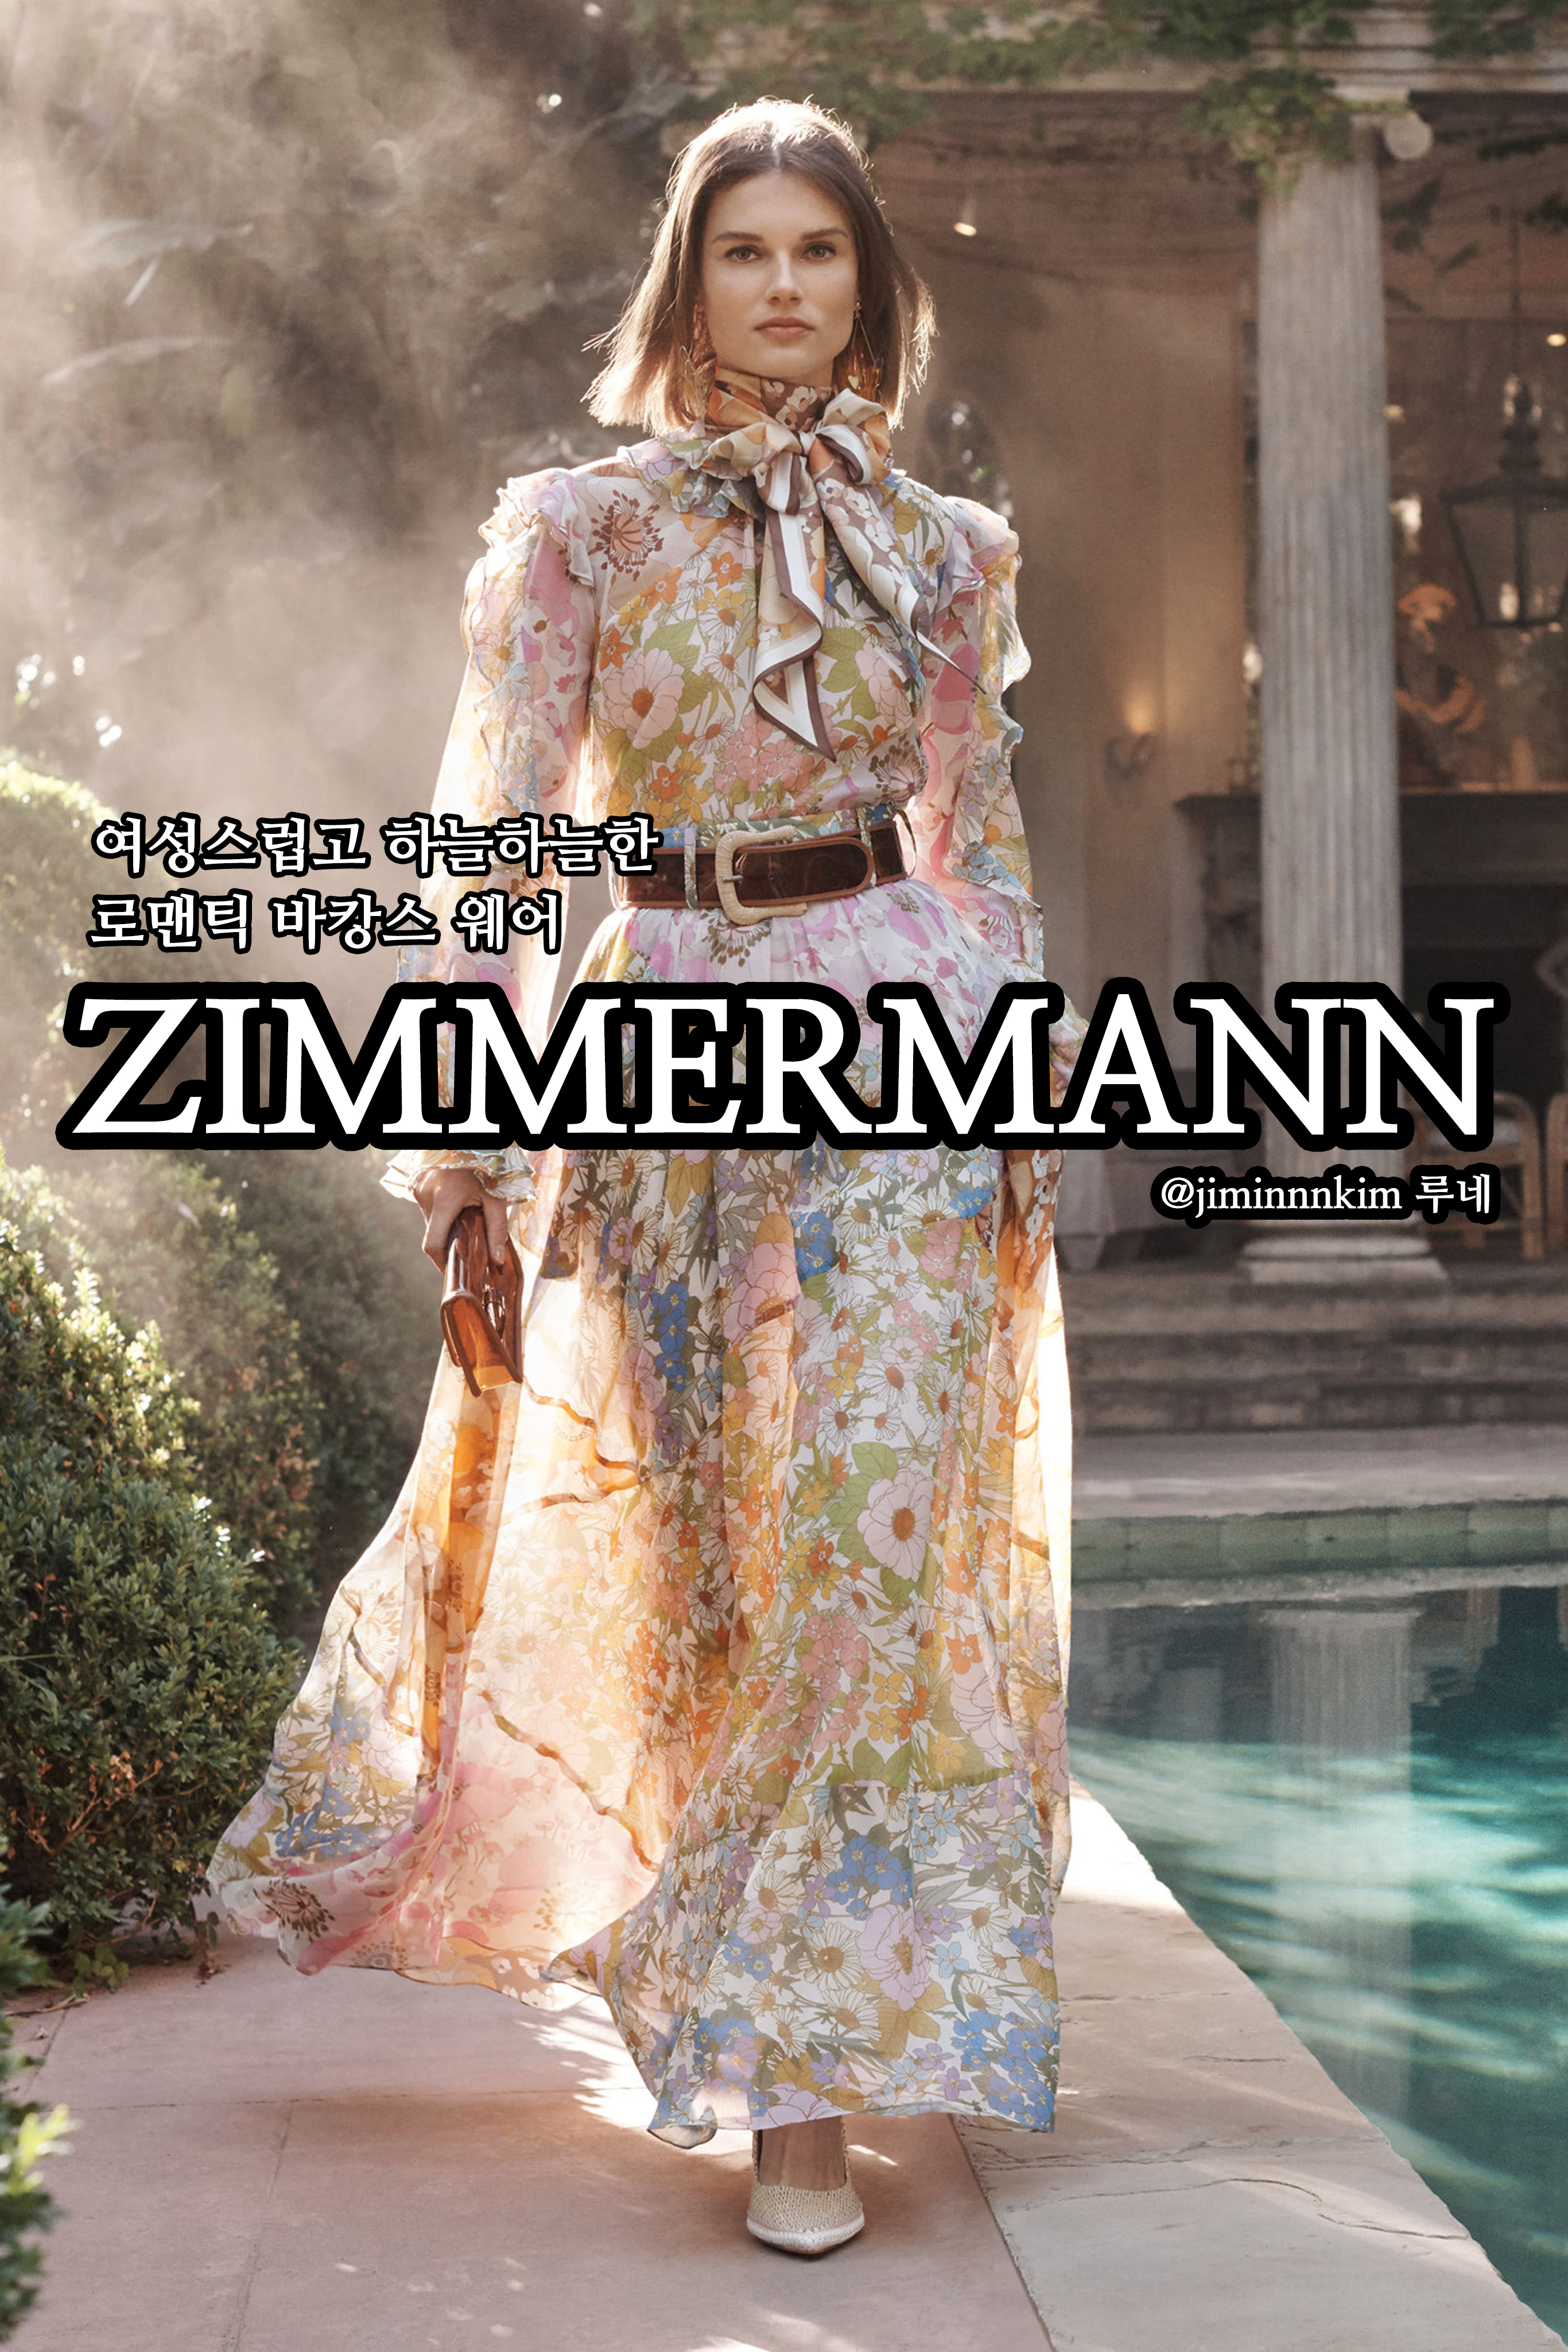 [의류 브랜드]바캉스 계절엔 로맨틱한 원피스를 "짐머만 Zimmermann"